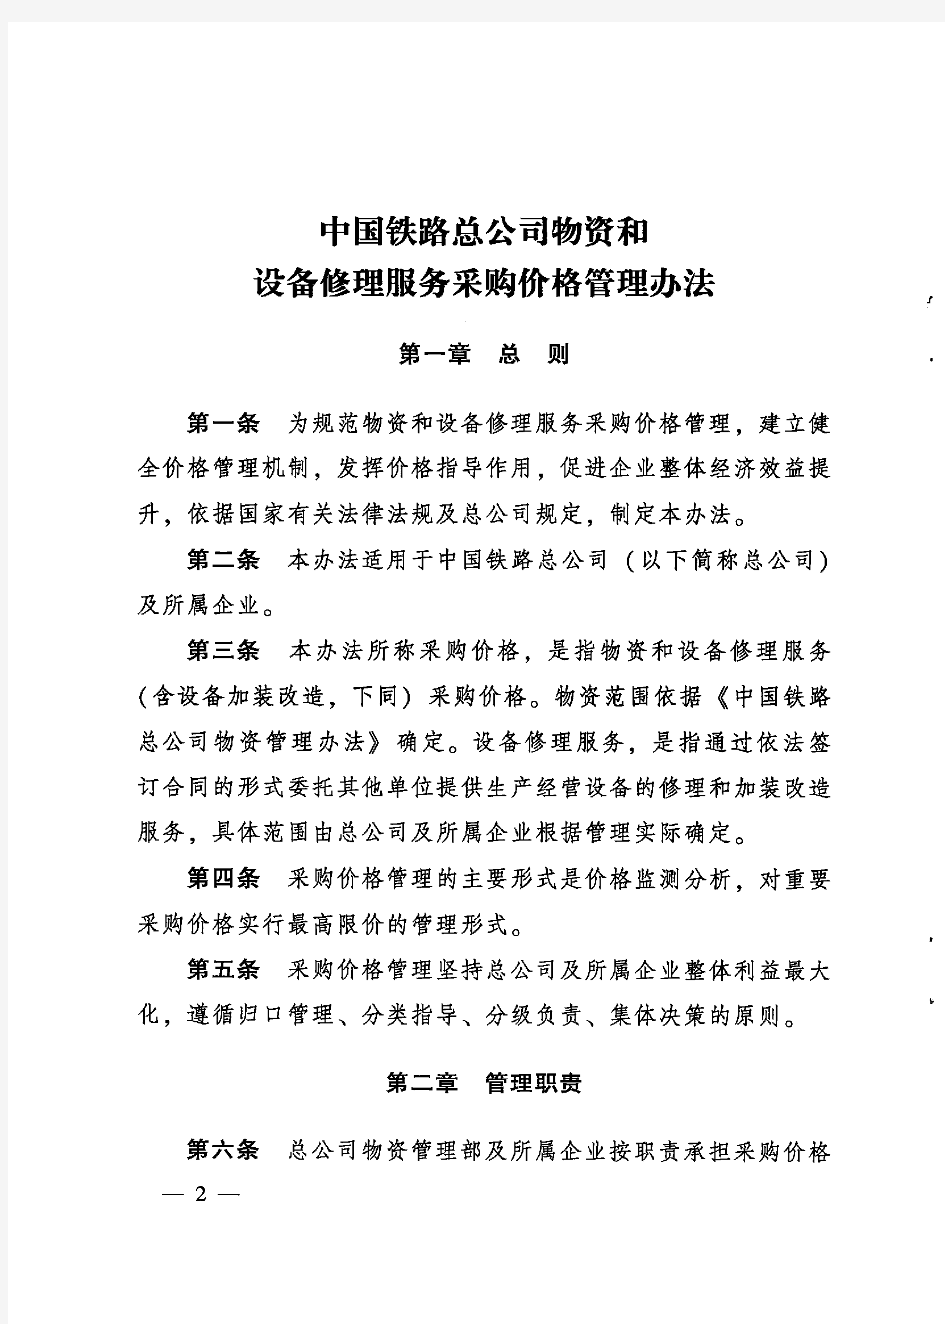 《中国铁路总公司物资和设备修理服务采购价格管理办法》(2018)131